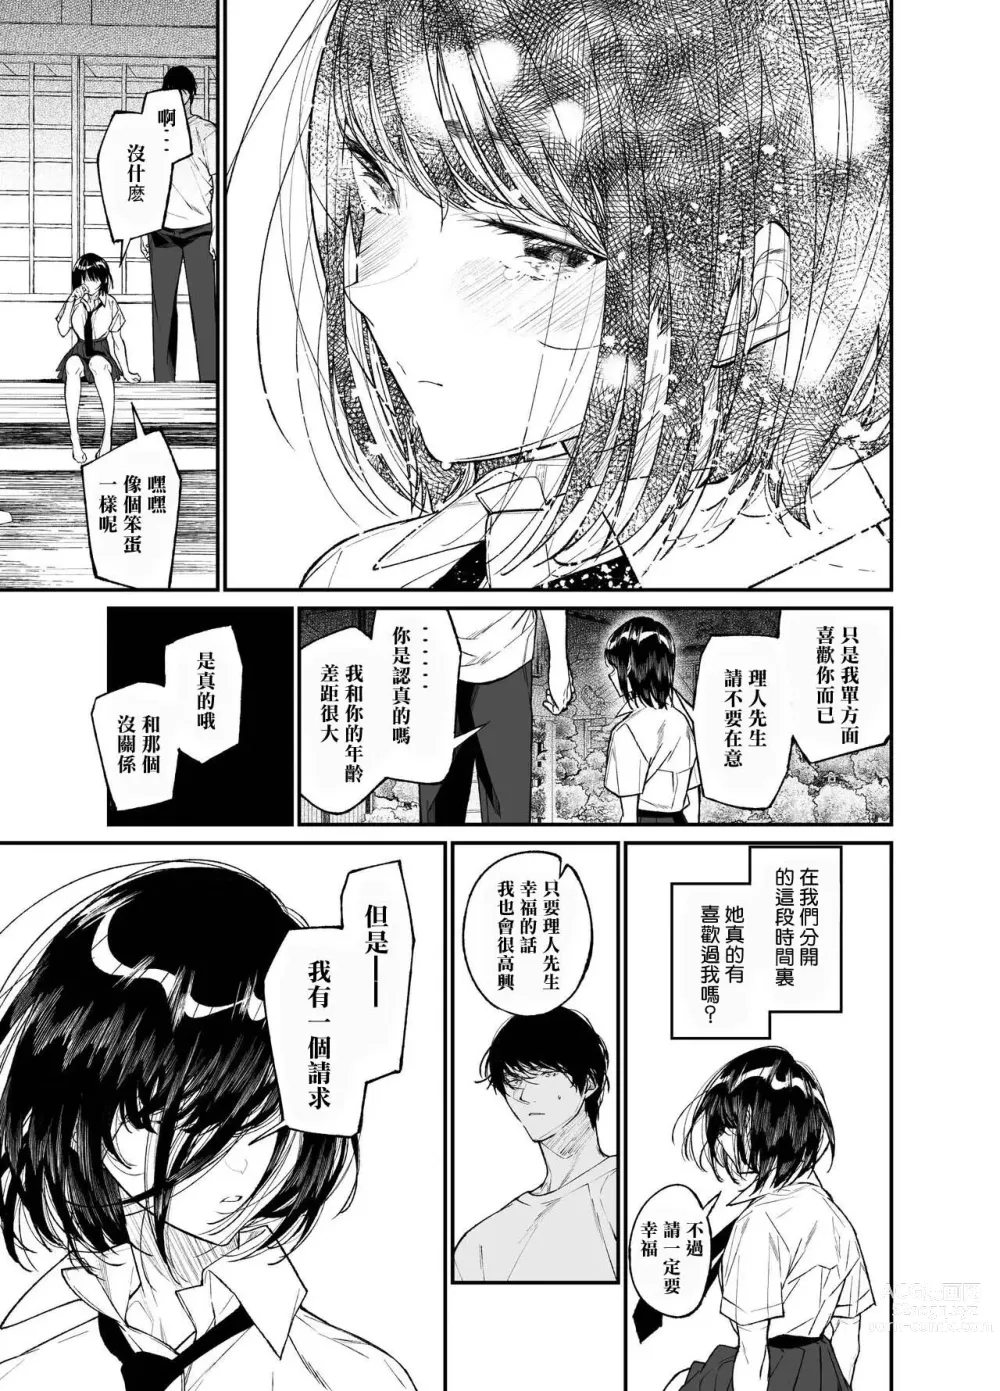 Page 9 of doujinshi Natsu, Shoujo wa Tonde, Hi ni Iru.